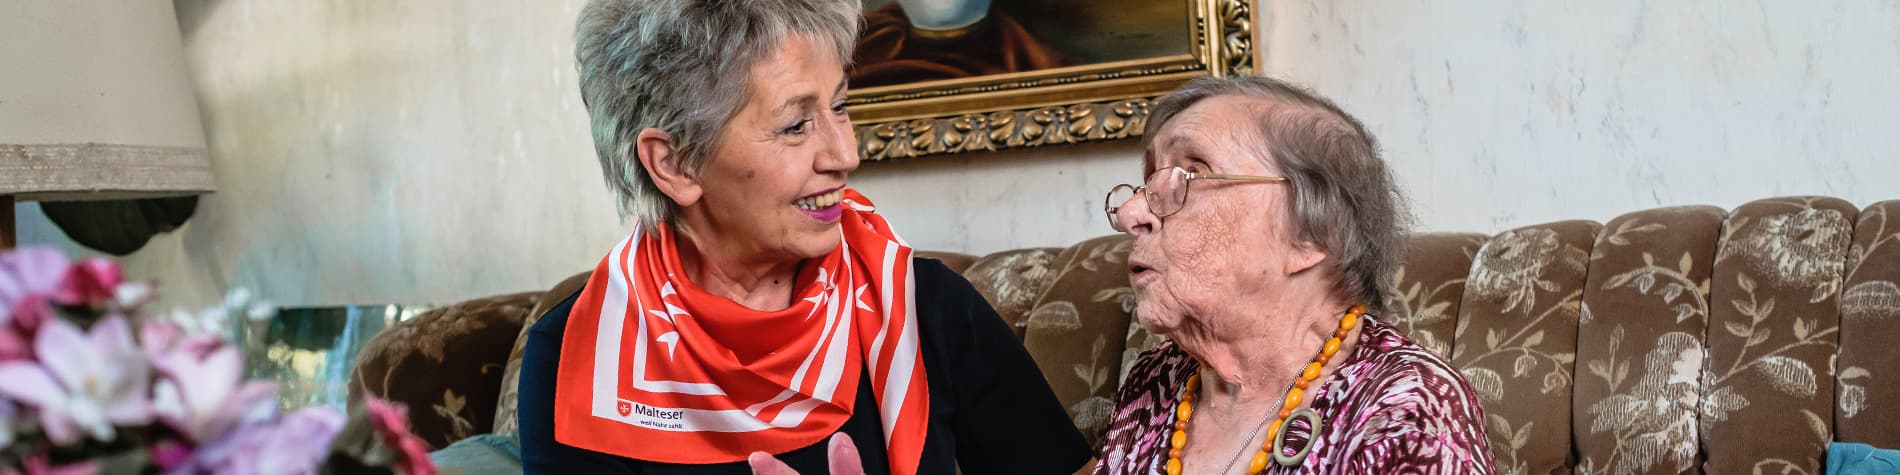 Malteser Mitarbeiterin spricht mit einer älteren Dame auf der Couch.